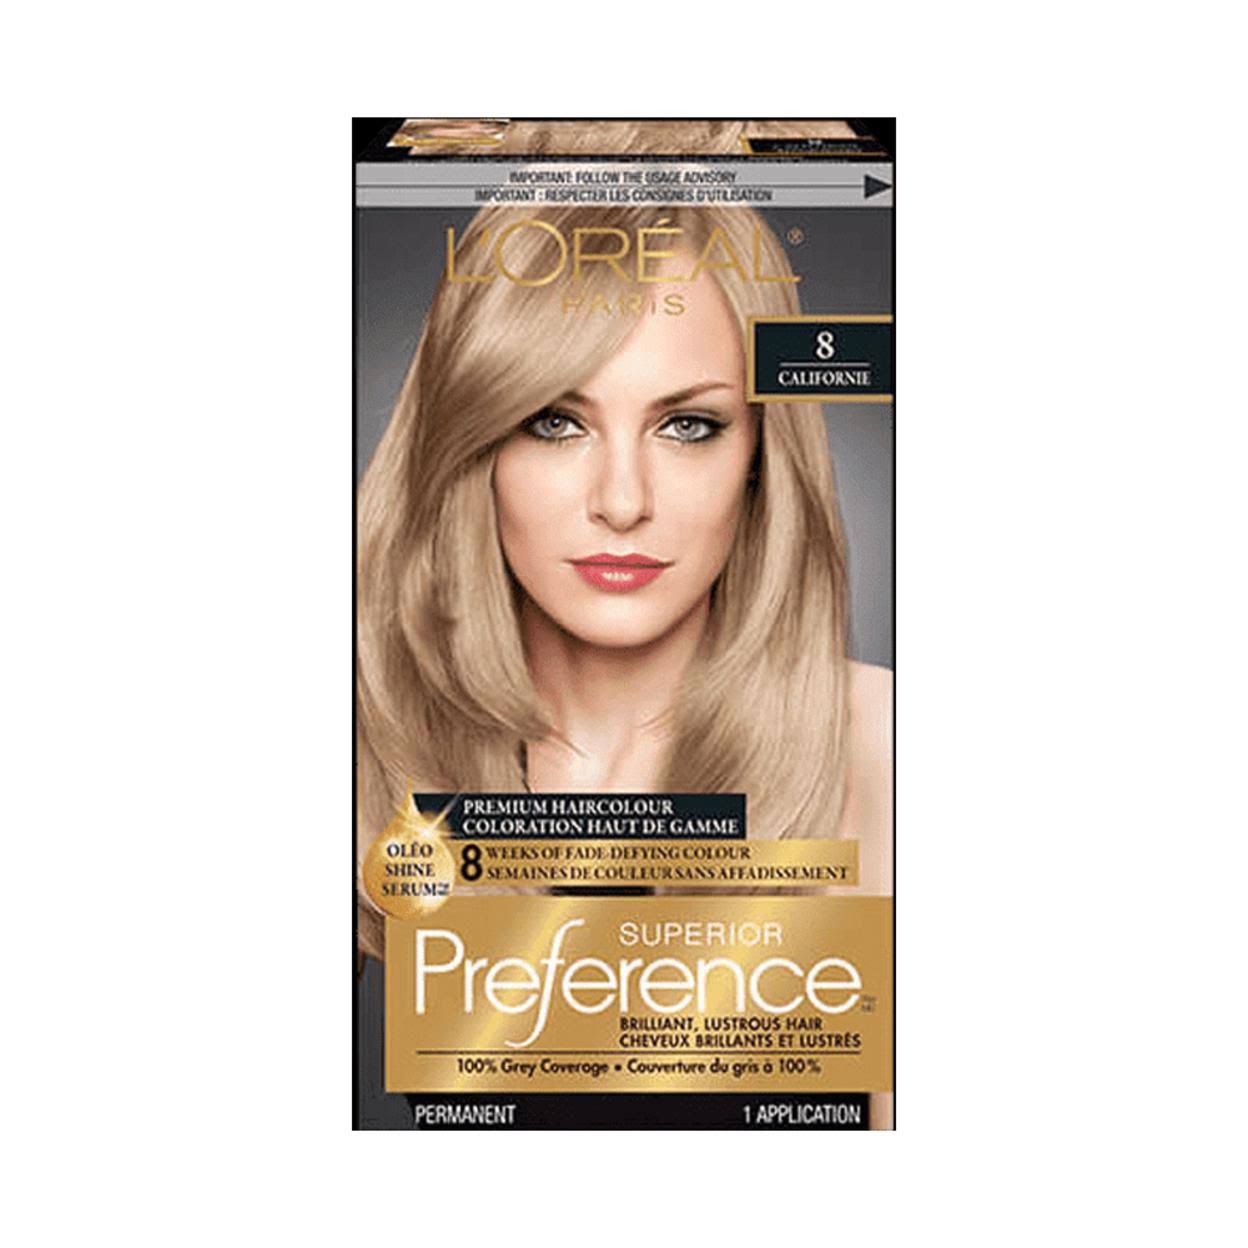 L'Oréal Paris Superior Preference Haircolour, #8 ( Californie ) Medium Blonde